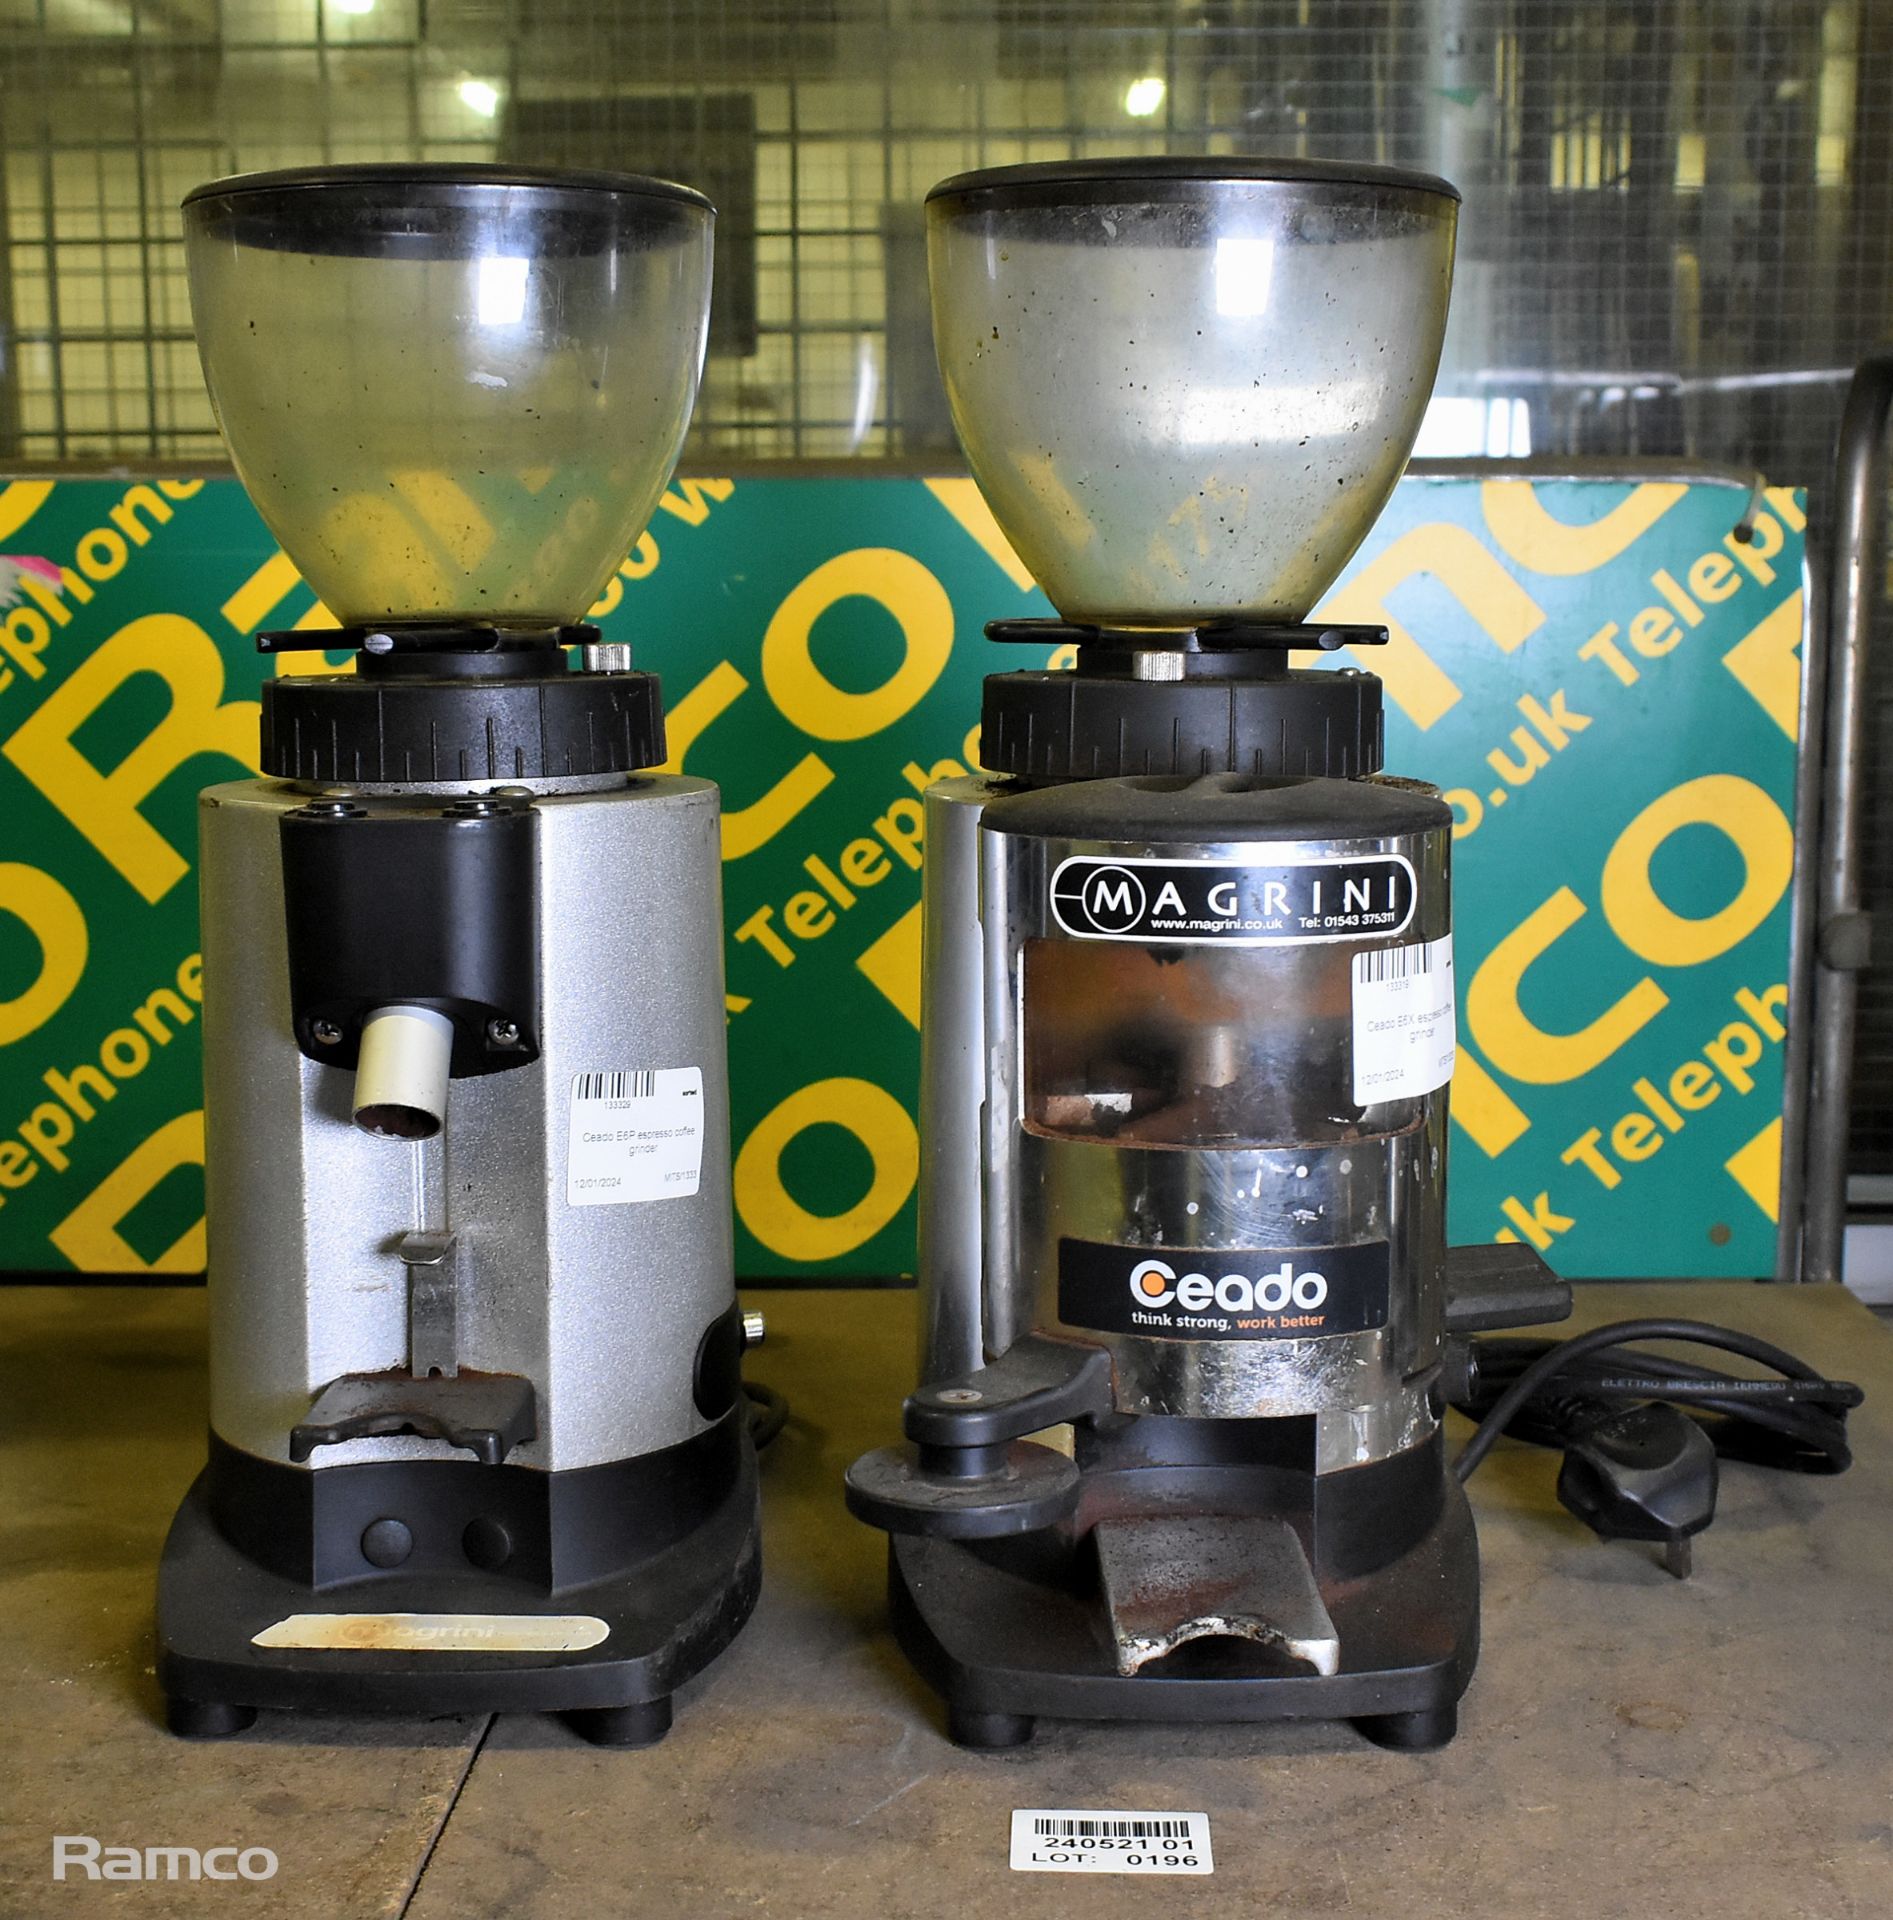 Ceado E6X espresso coffee grinder, Ceado E6P espresso coffee grinder